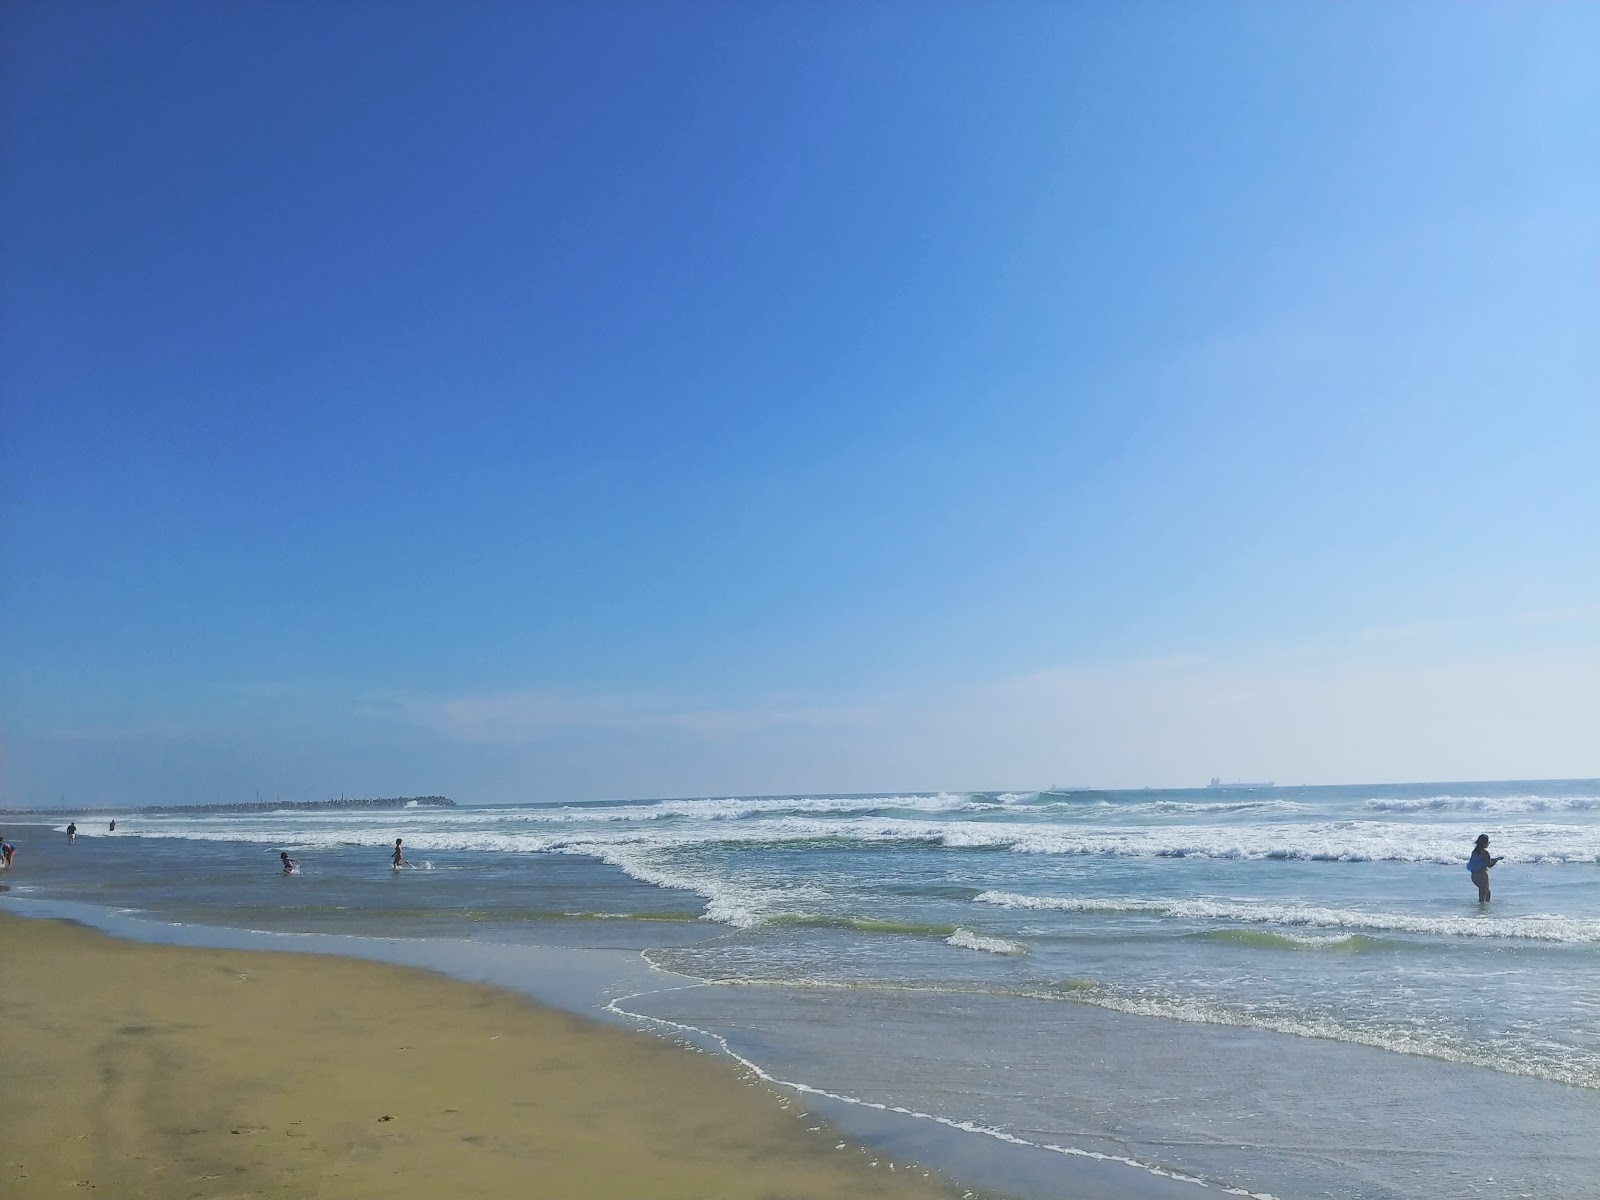 Playa Santa Monica'in fotoğrafı parlak kum yüzey ile